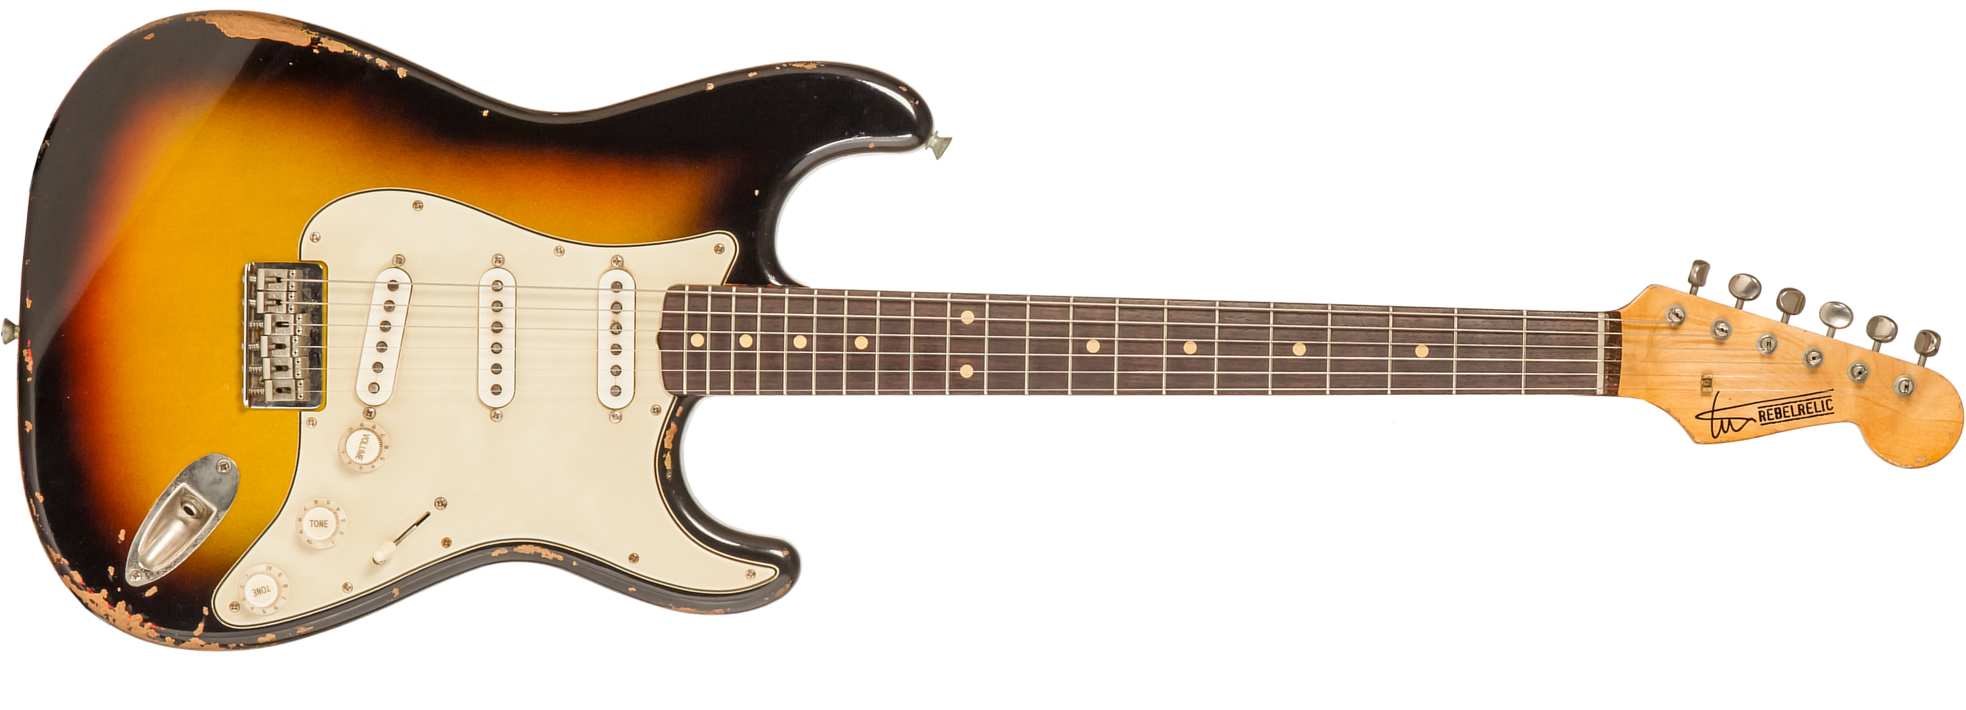 Rebelrelic S-series 1961 Hardtail 3s Ht Rw #231008 - 3-tone Sunburst - Elektrische gitaar in Str-vorm - Main picture